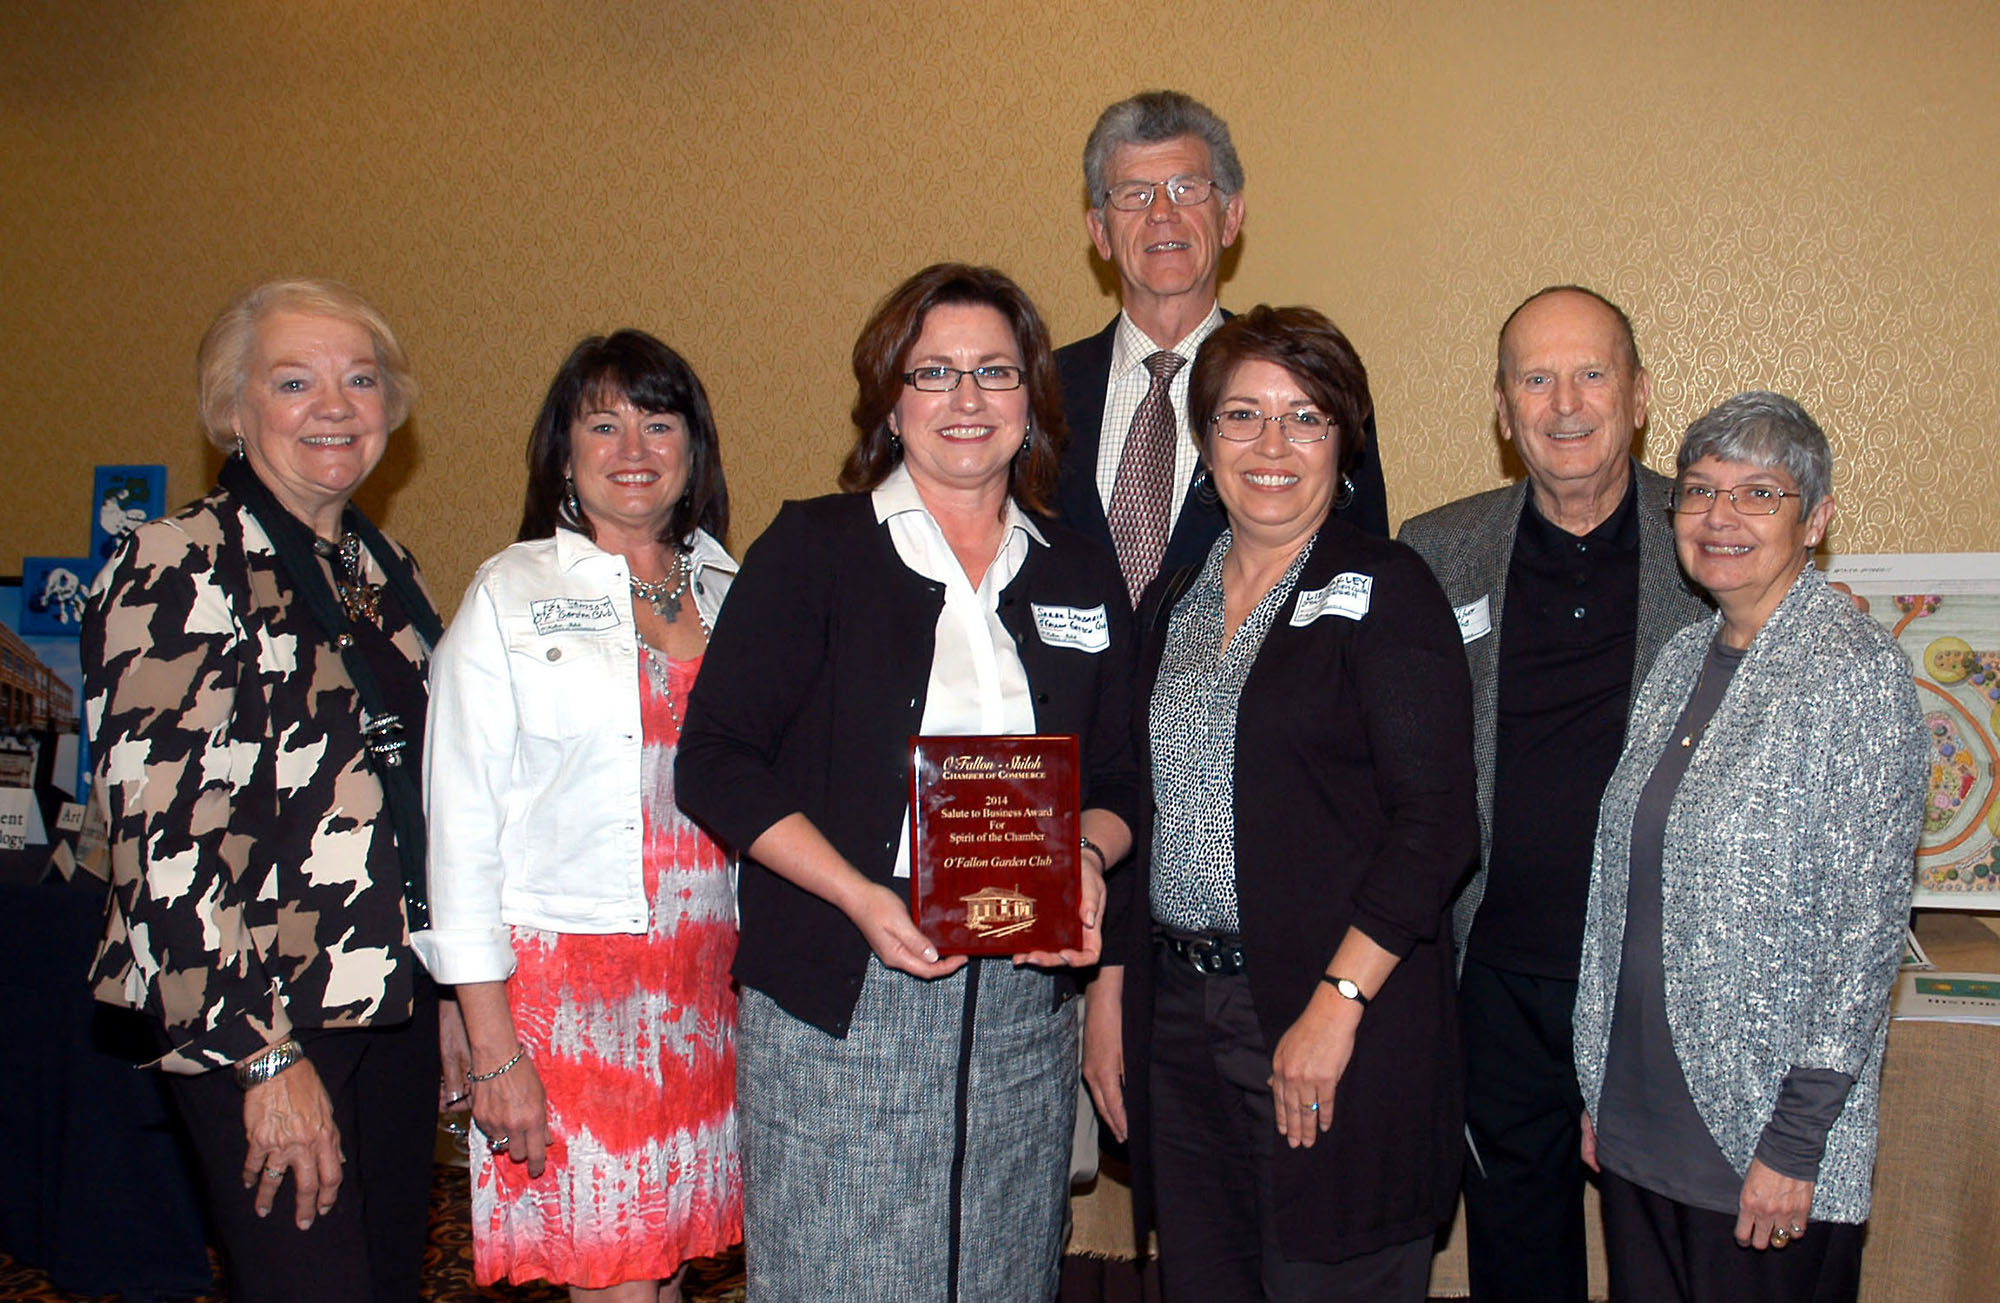 O'Fallon Garden Club in OFallon, Illinois Wins Recognition & Awards from Garden Clubs of IL & National Garden Club